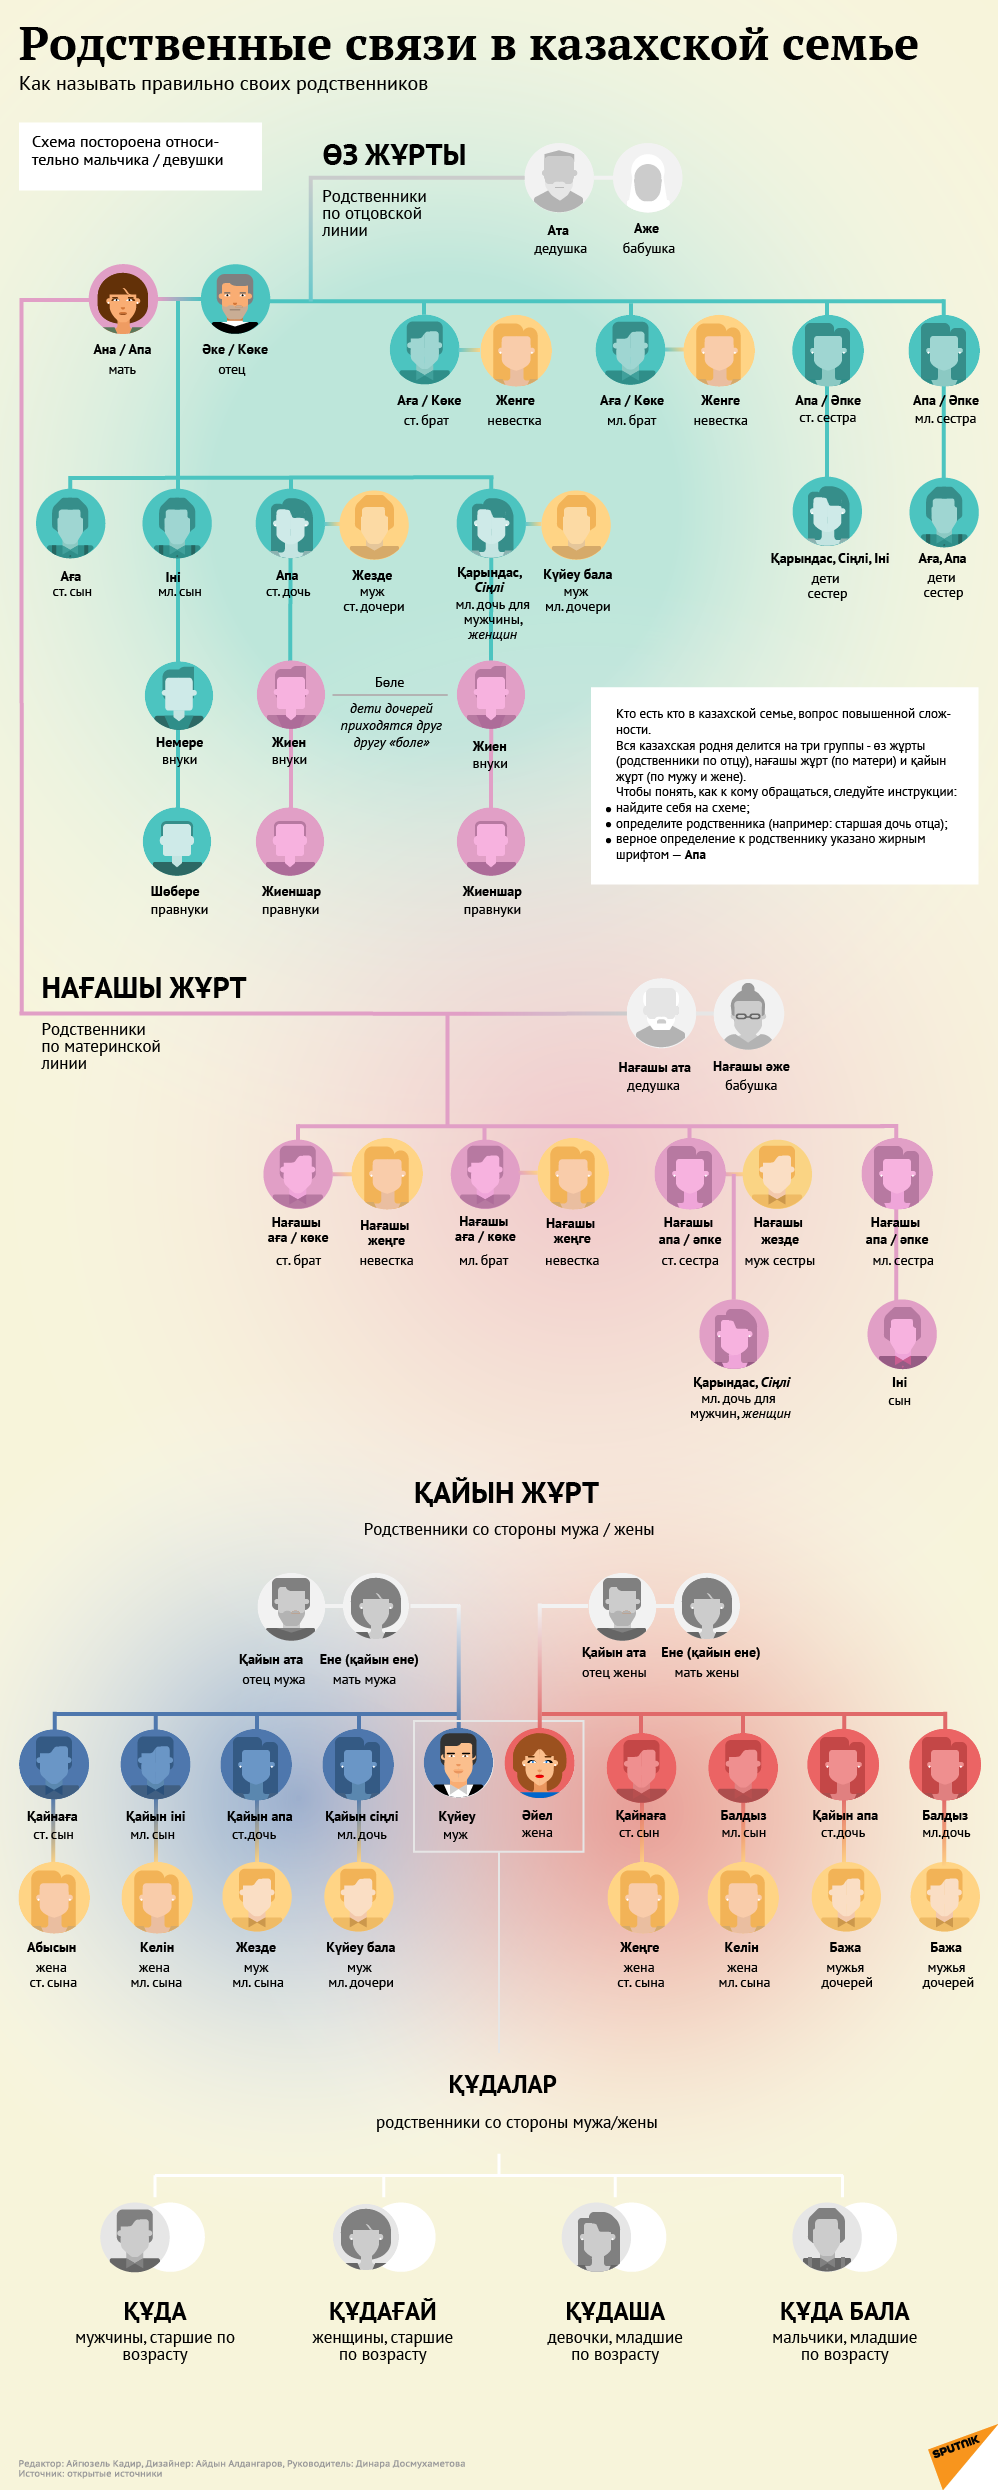 Как называть родственников в казахской семье - Sputnik Казахстан